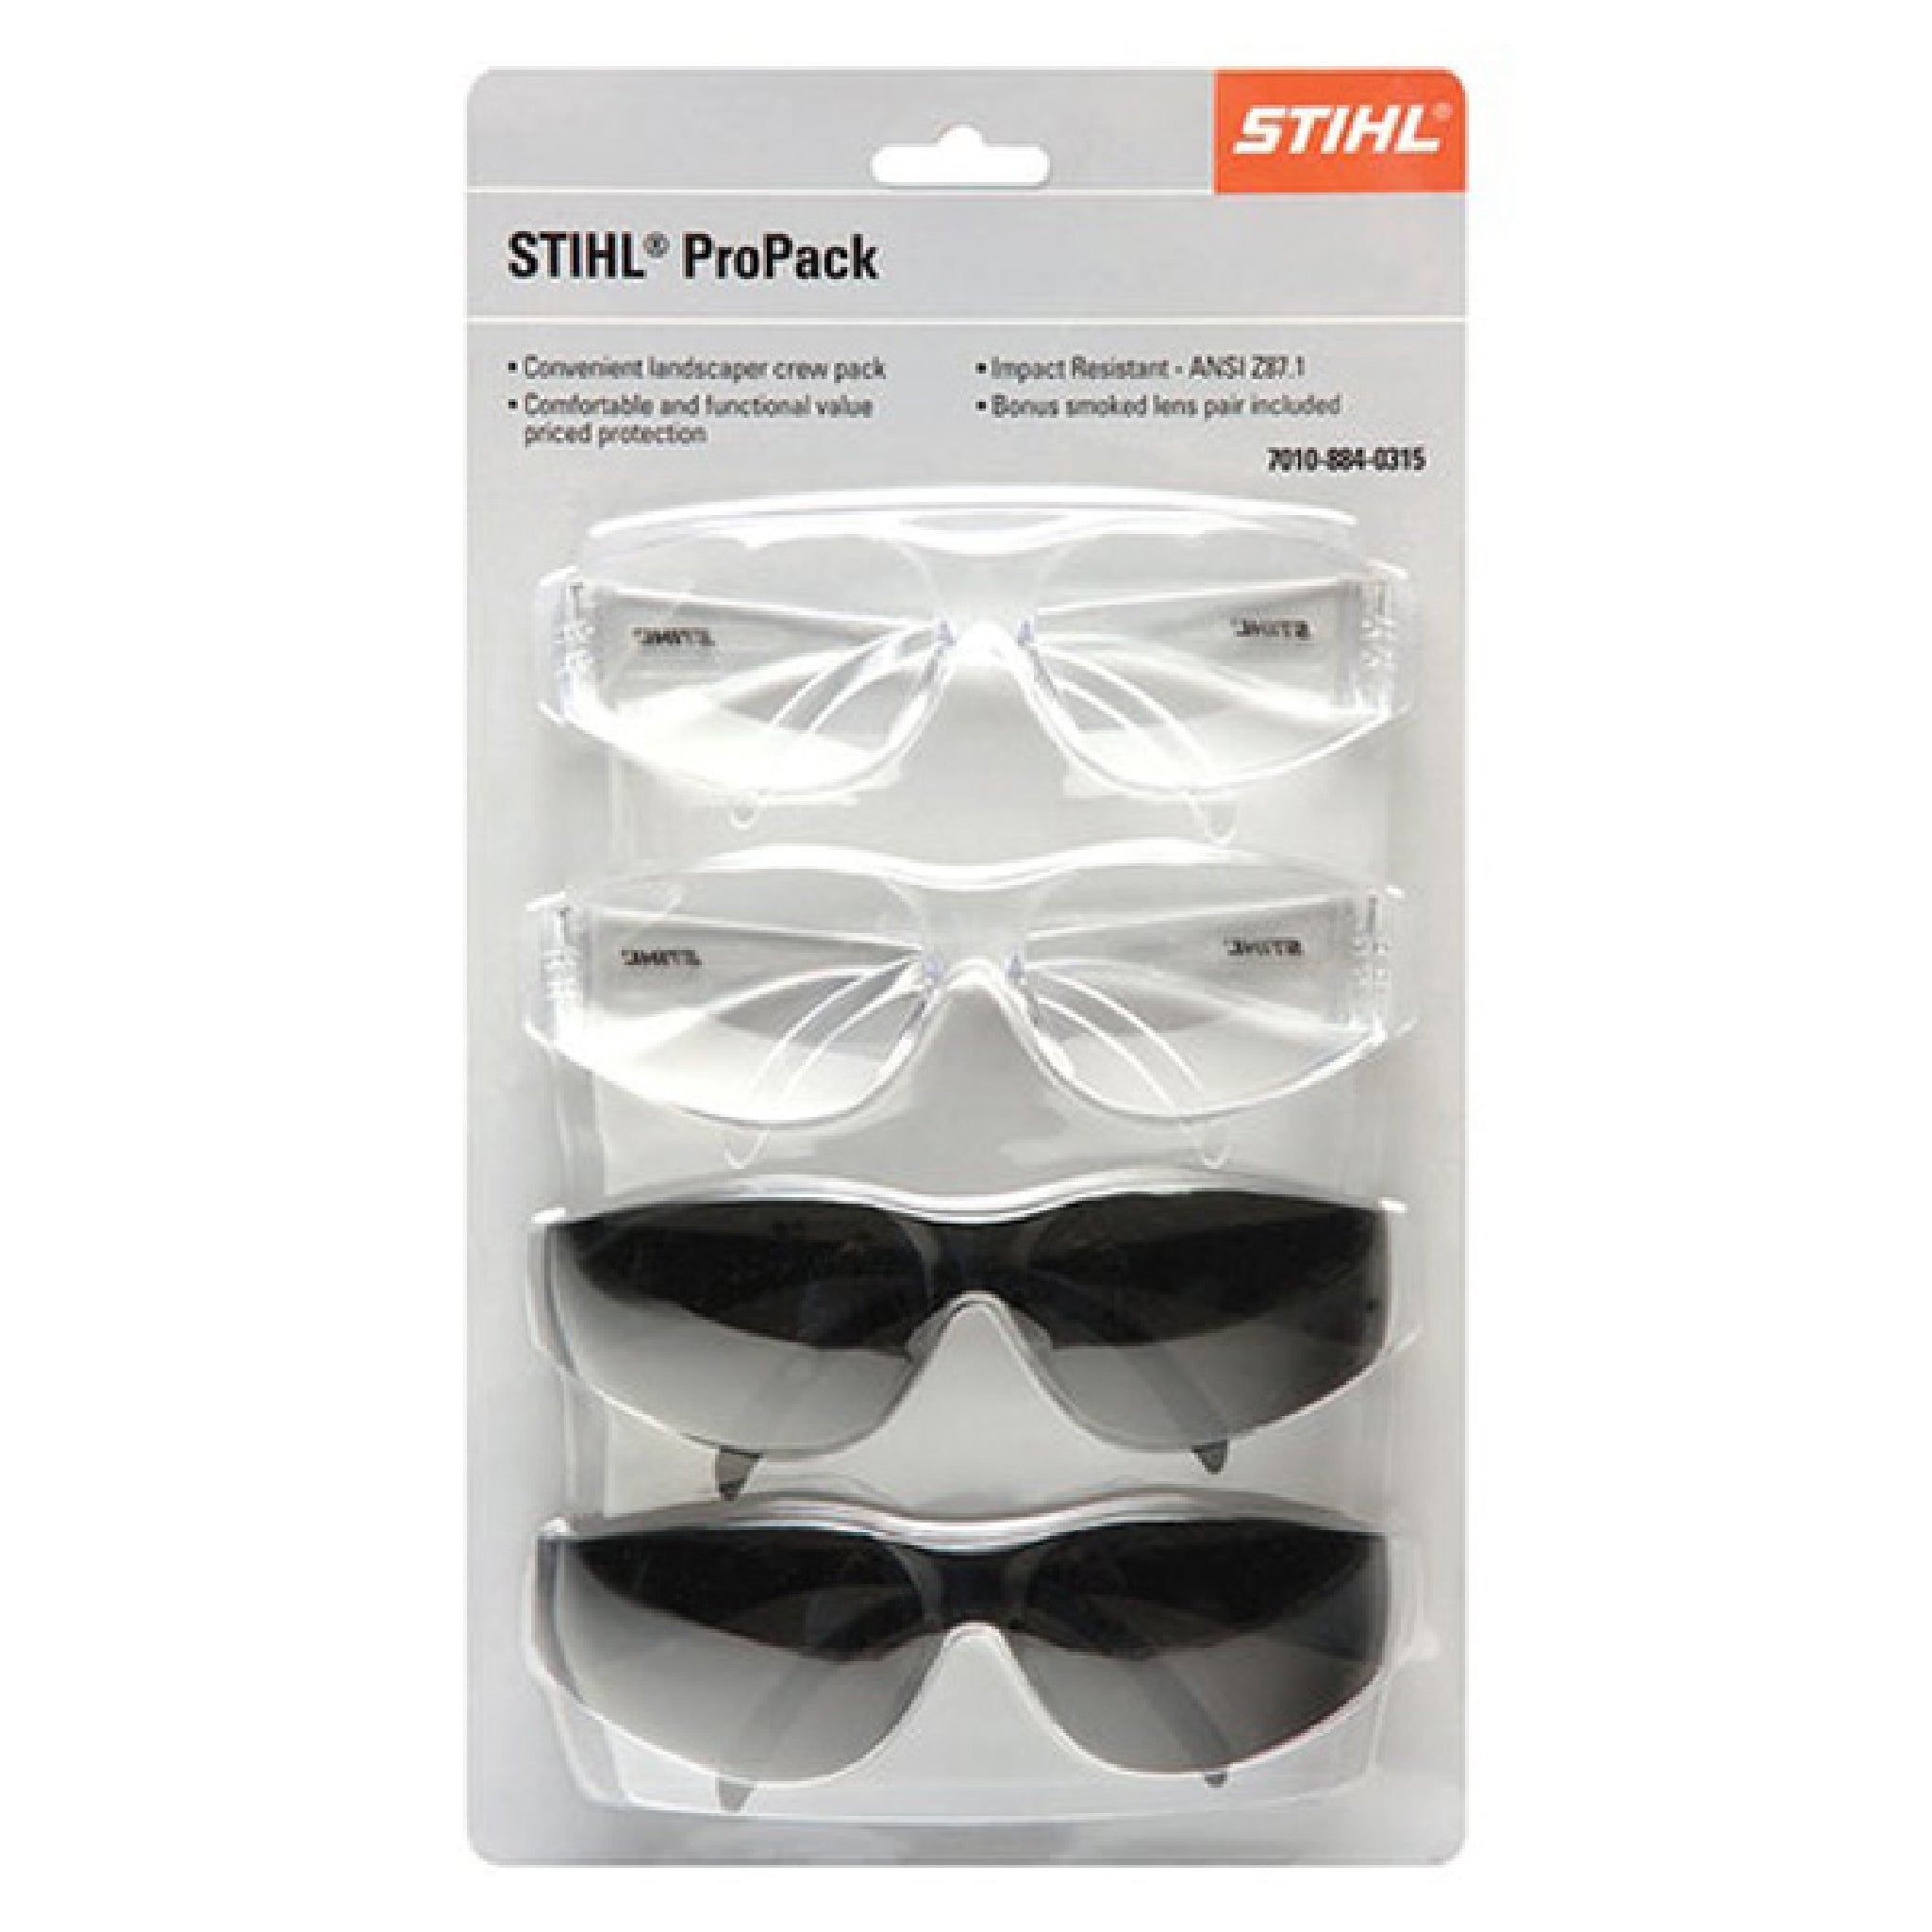 Stihl 7010 884 0315 Pro Pack 4 Glasses